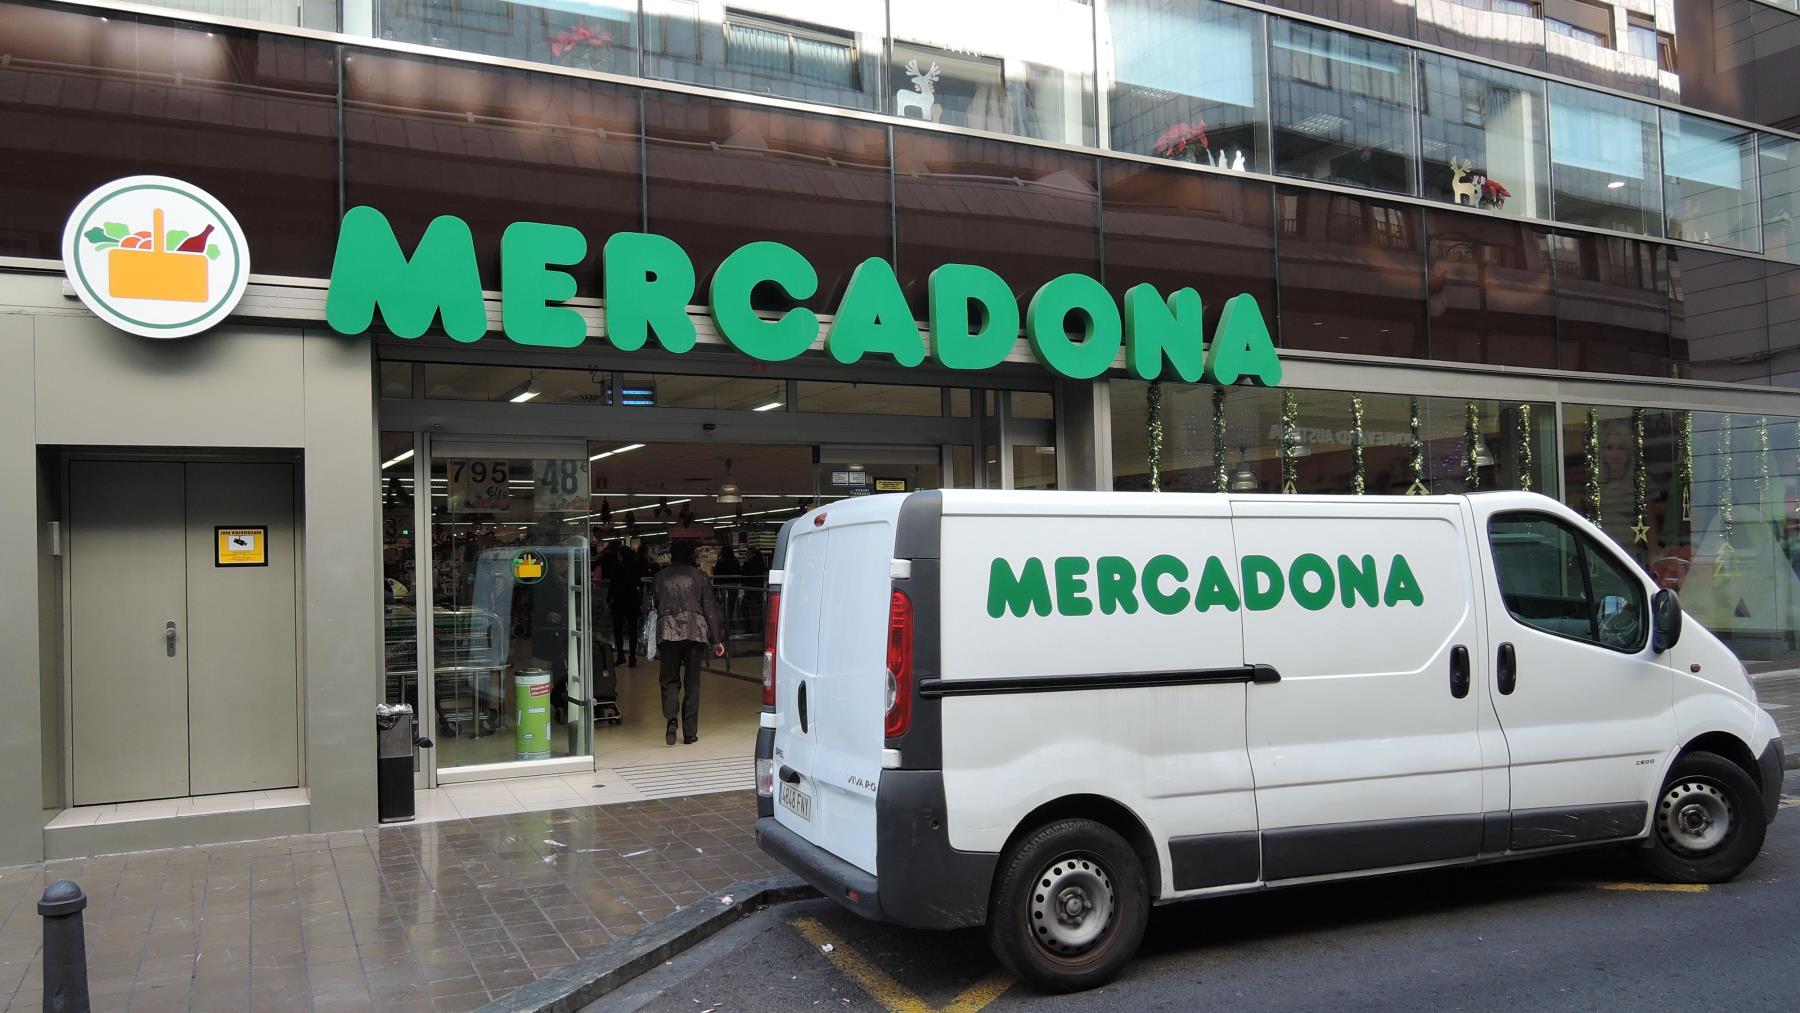 Top ventas en Mercadona este verano (y se fabrica en Murcia) - La